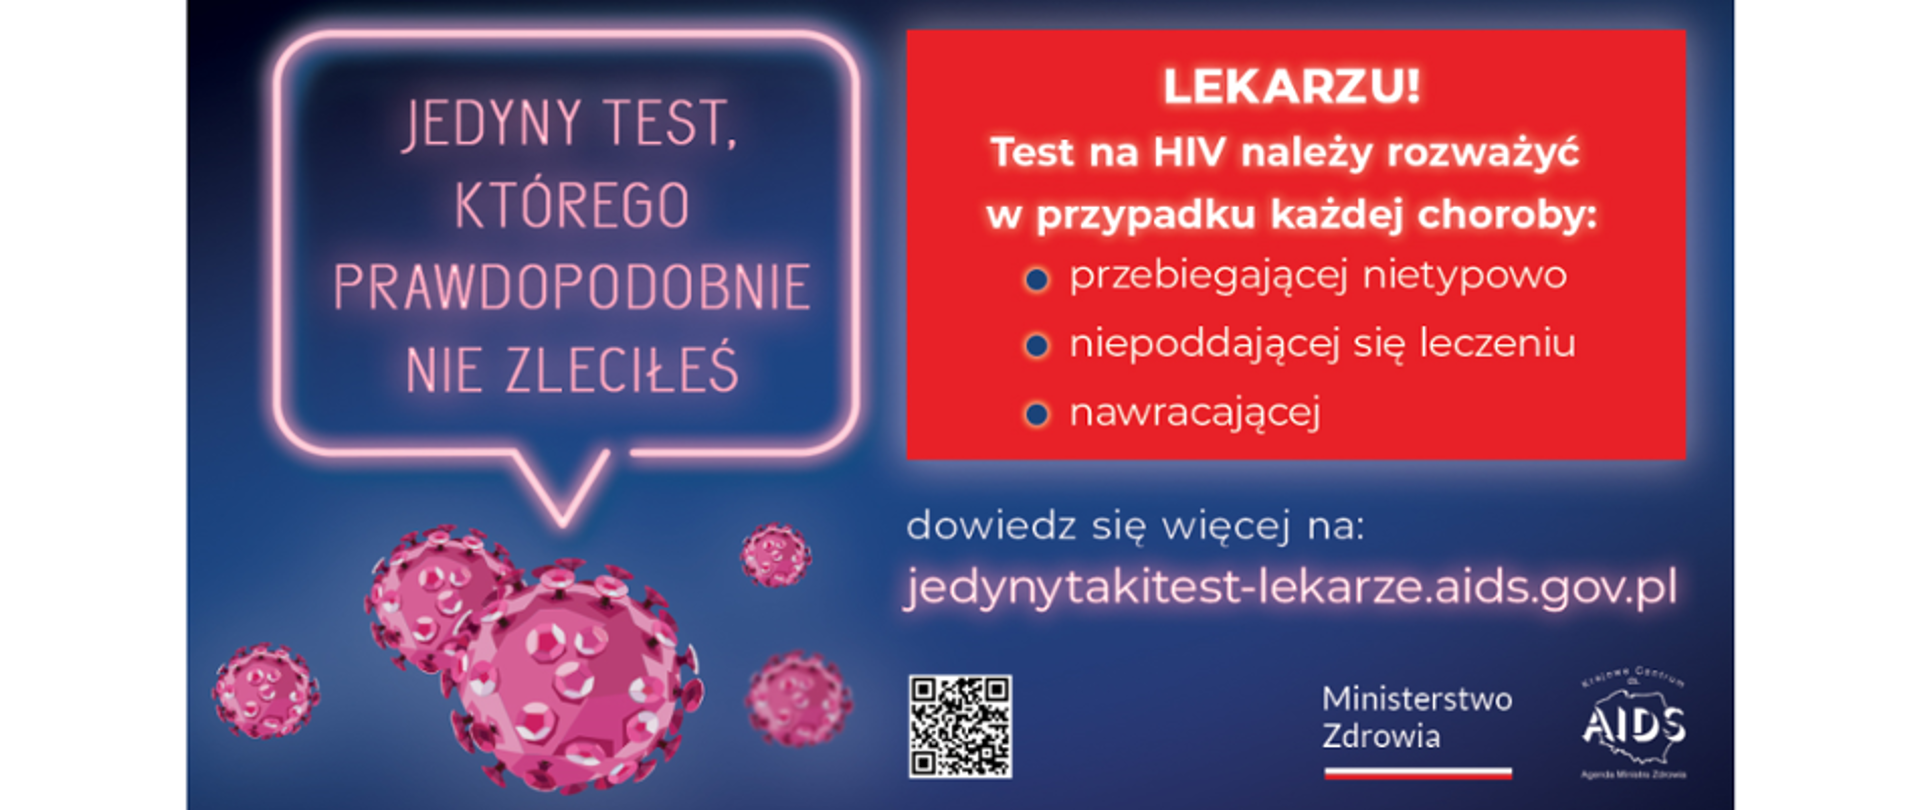 Ulotka po lewej stronie napis "Jedyny test, którego prawdopodobnie nie zleciłeś po prawej napis "Lekarzu! Test na HIV należy rozważyć w przypadku każdej choroby